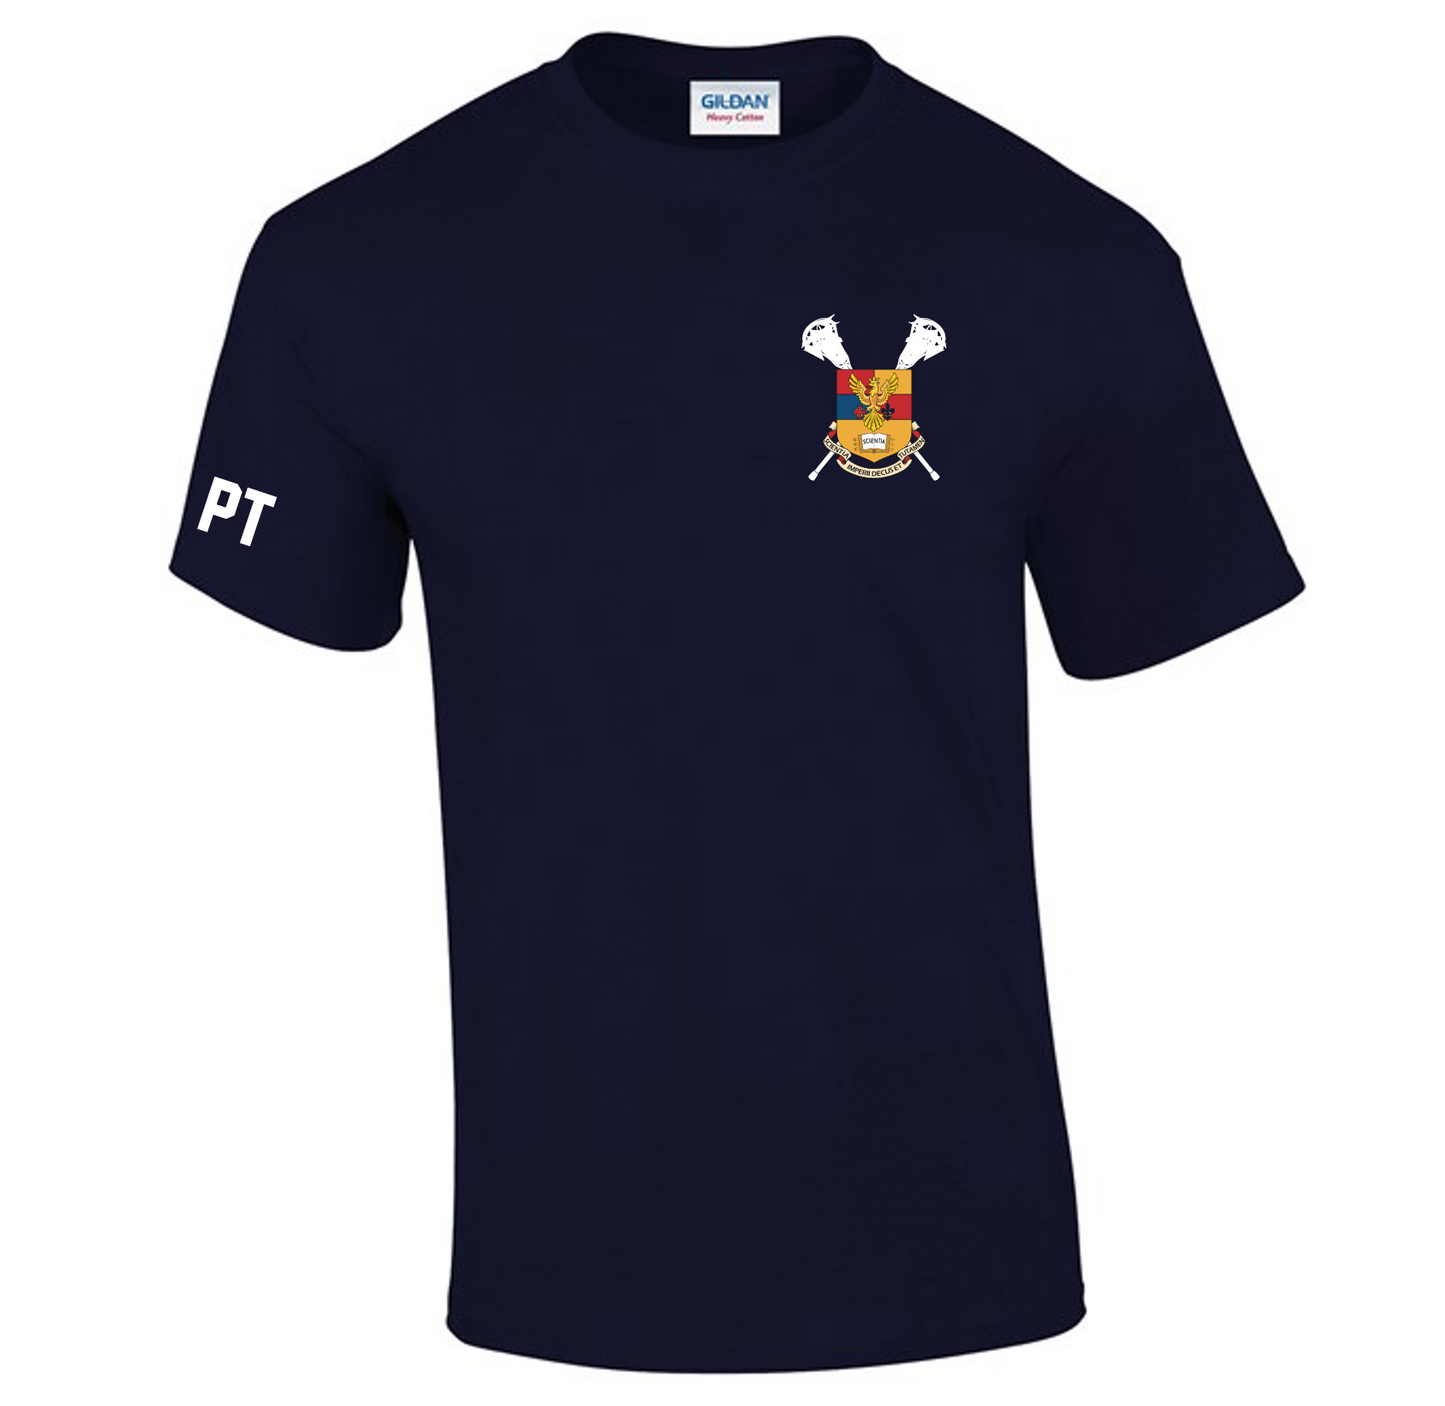 Imperial Lacrosse Cotton T-Shirt